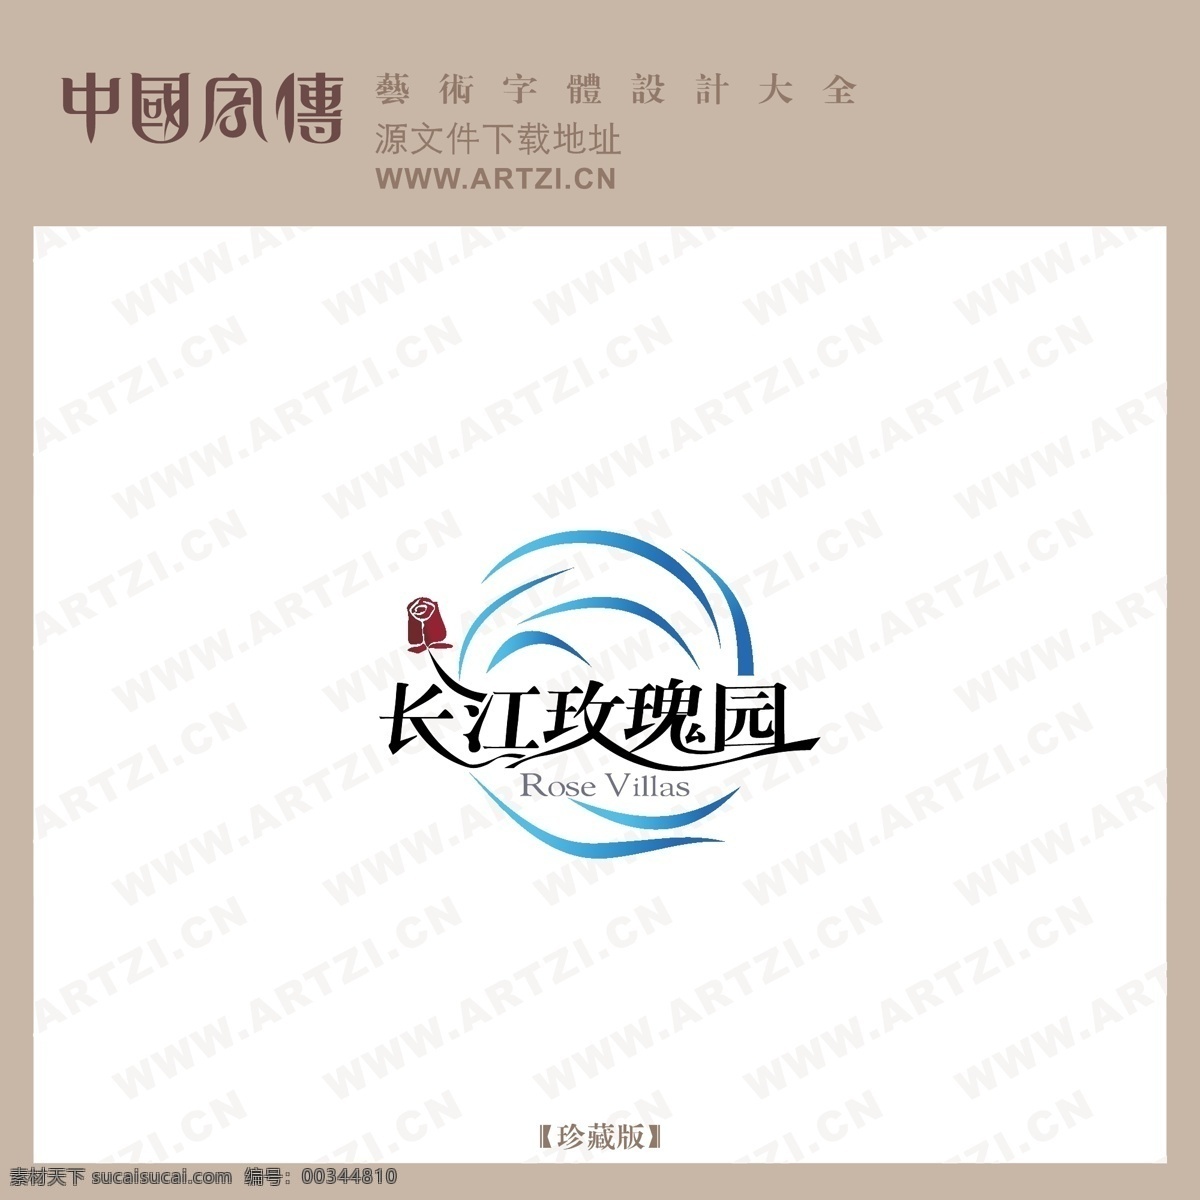 长江玫瑰园 矢量下载 网页矢量 商业矢量 logo大全 白色